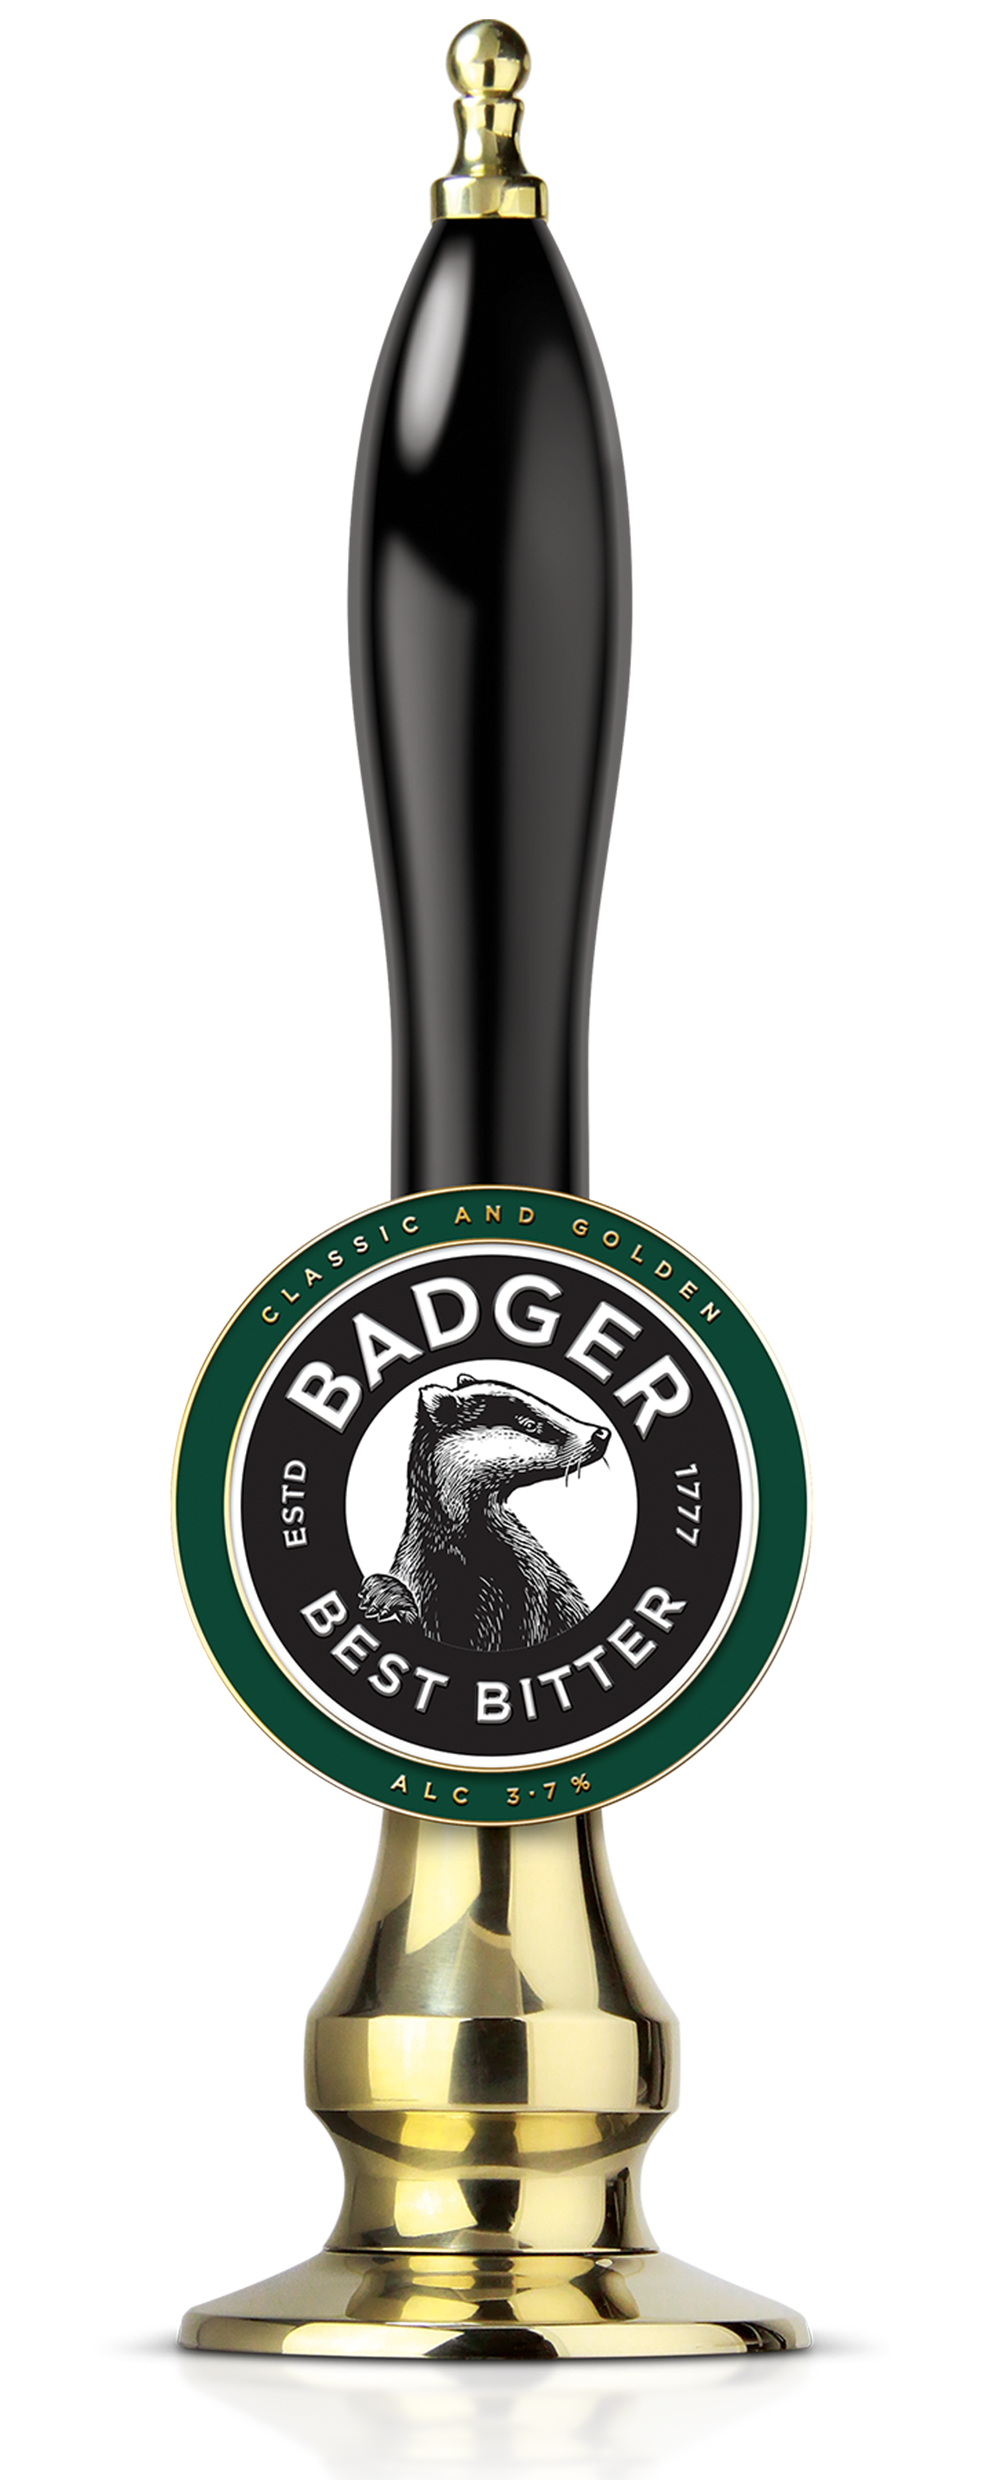 Badger Best Bitter Pump